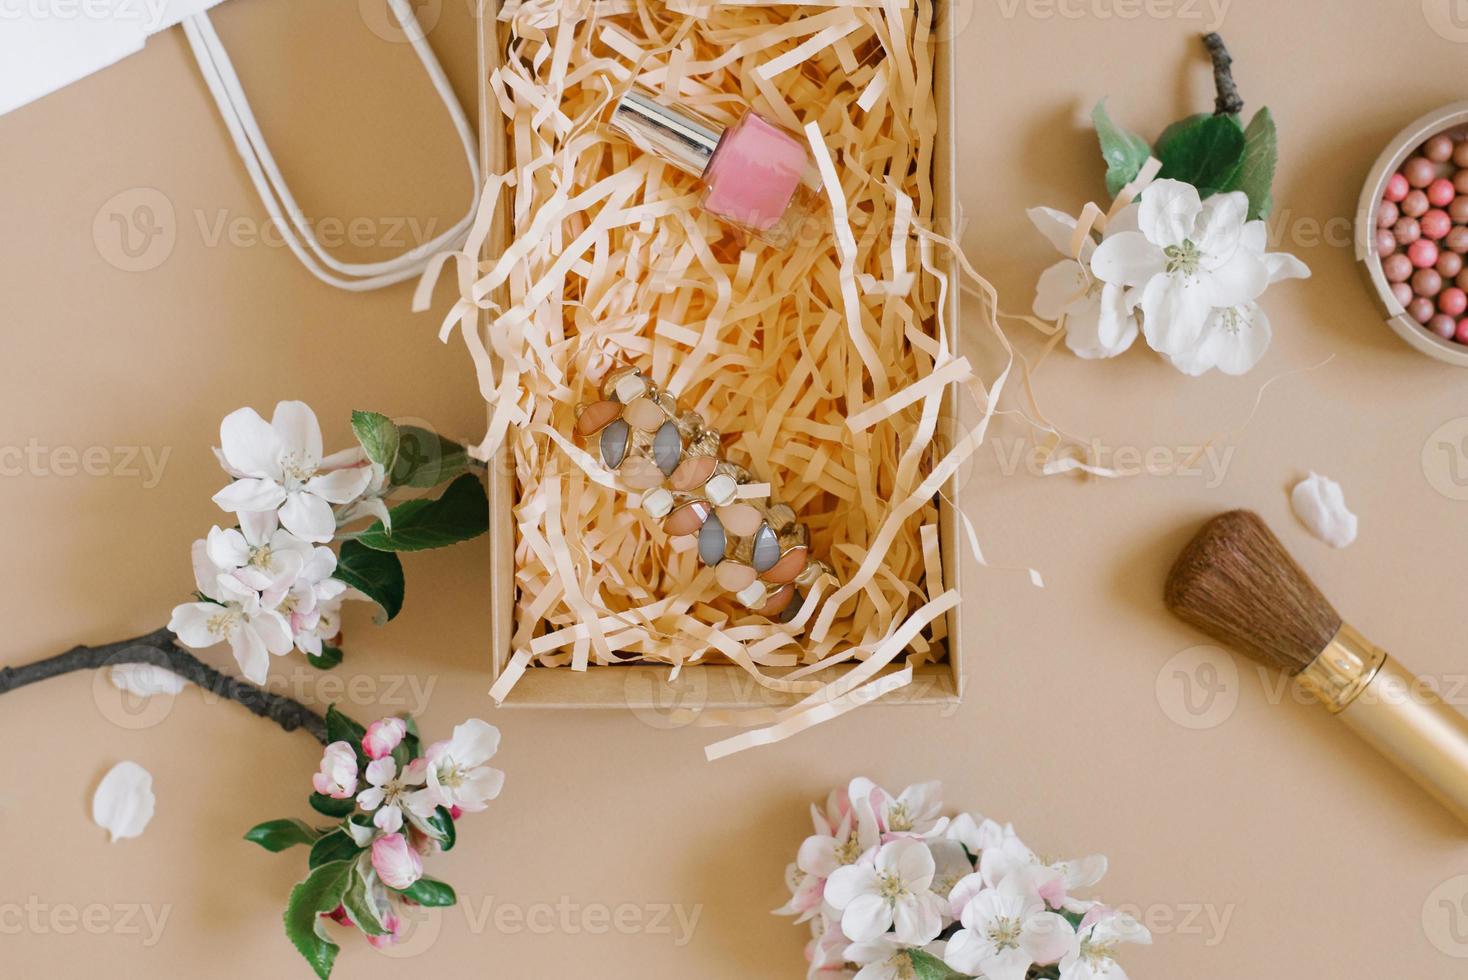 fard à joues, pinceau, vernis à ongles et bracelet sur fond beige entouré de fleurs délicates blanches dans une boîte cadeau. mise à plat photo